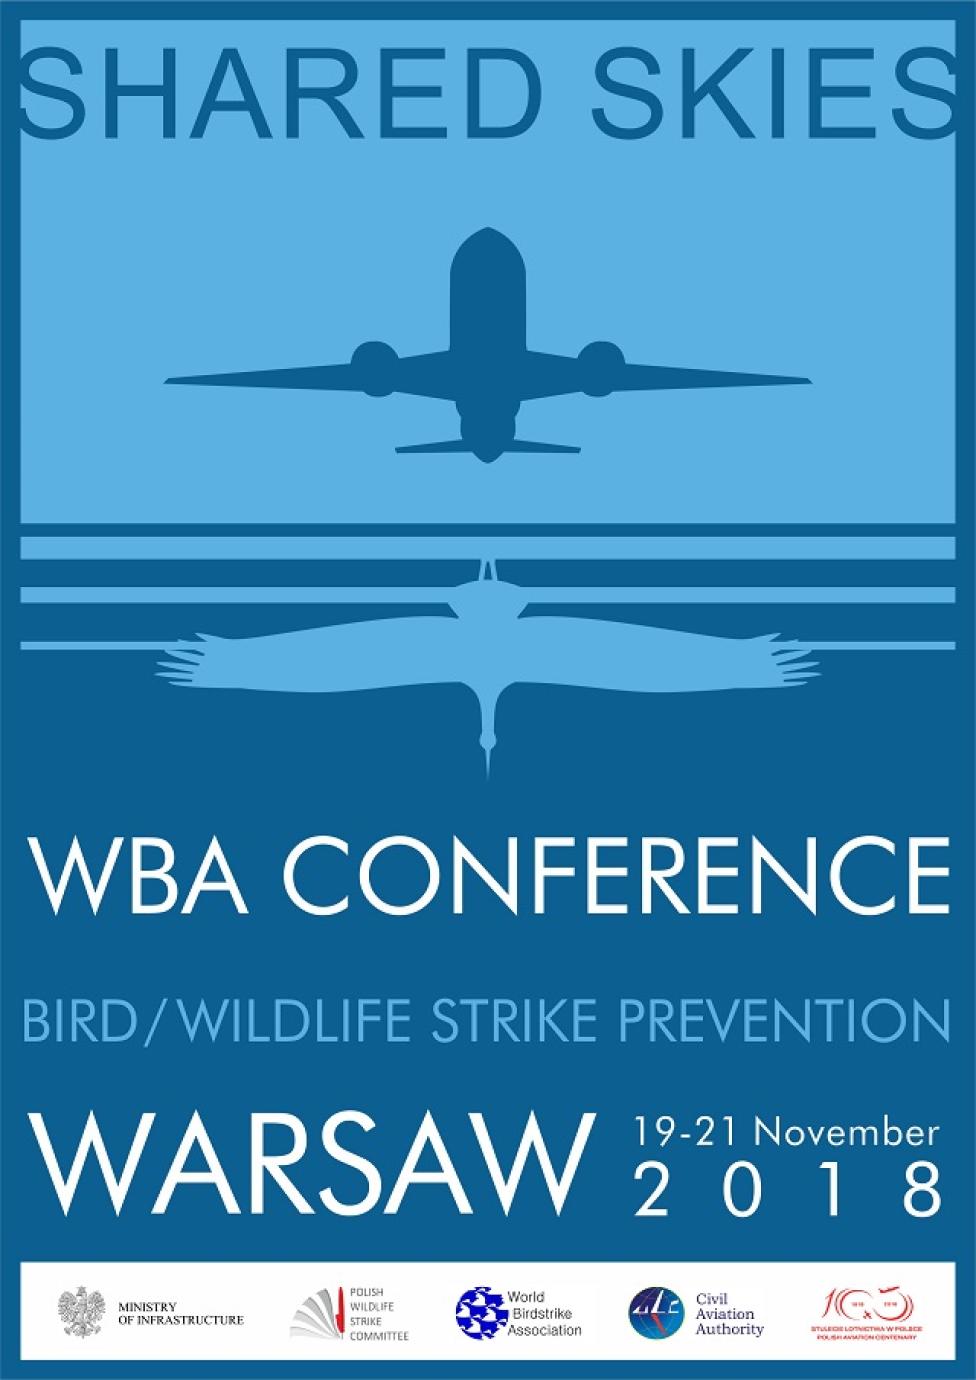 WBA "Bird/Wildlife Strike Prevention" 